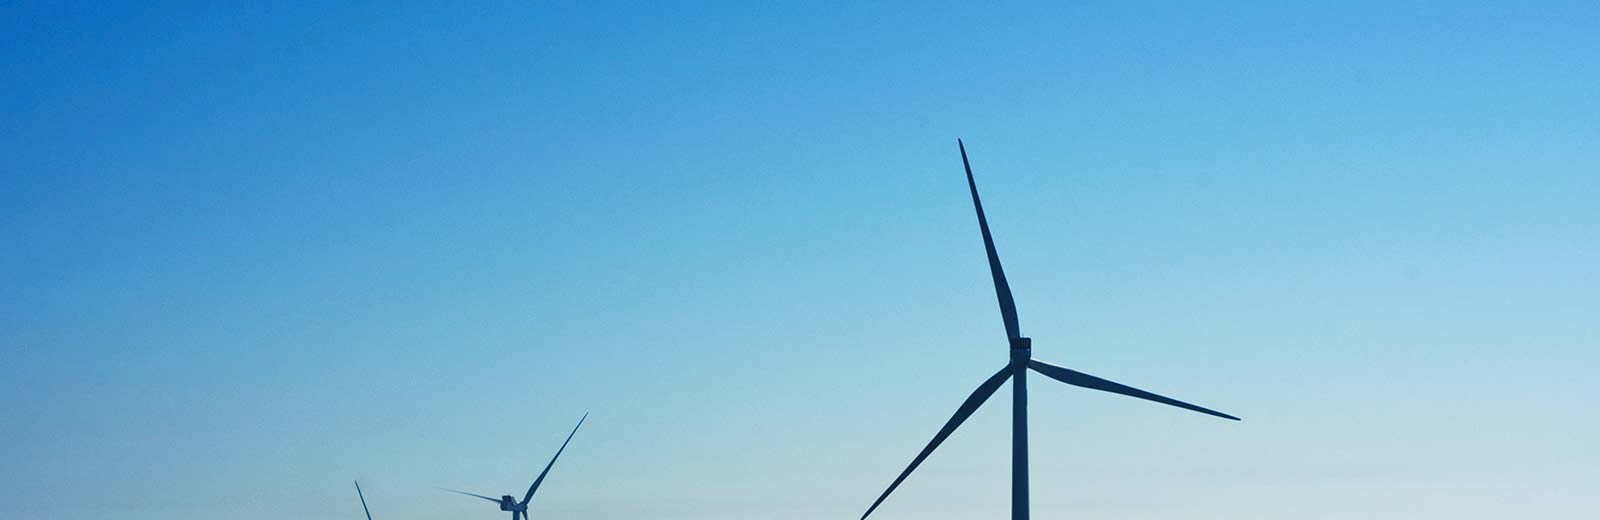 Sustainable energy ocean wind farm 